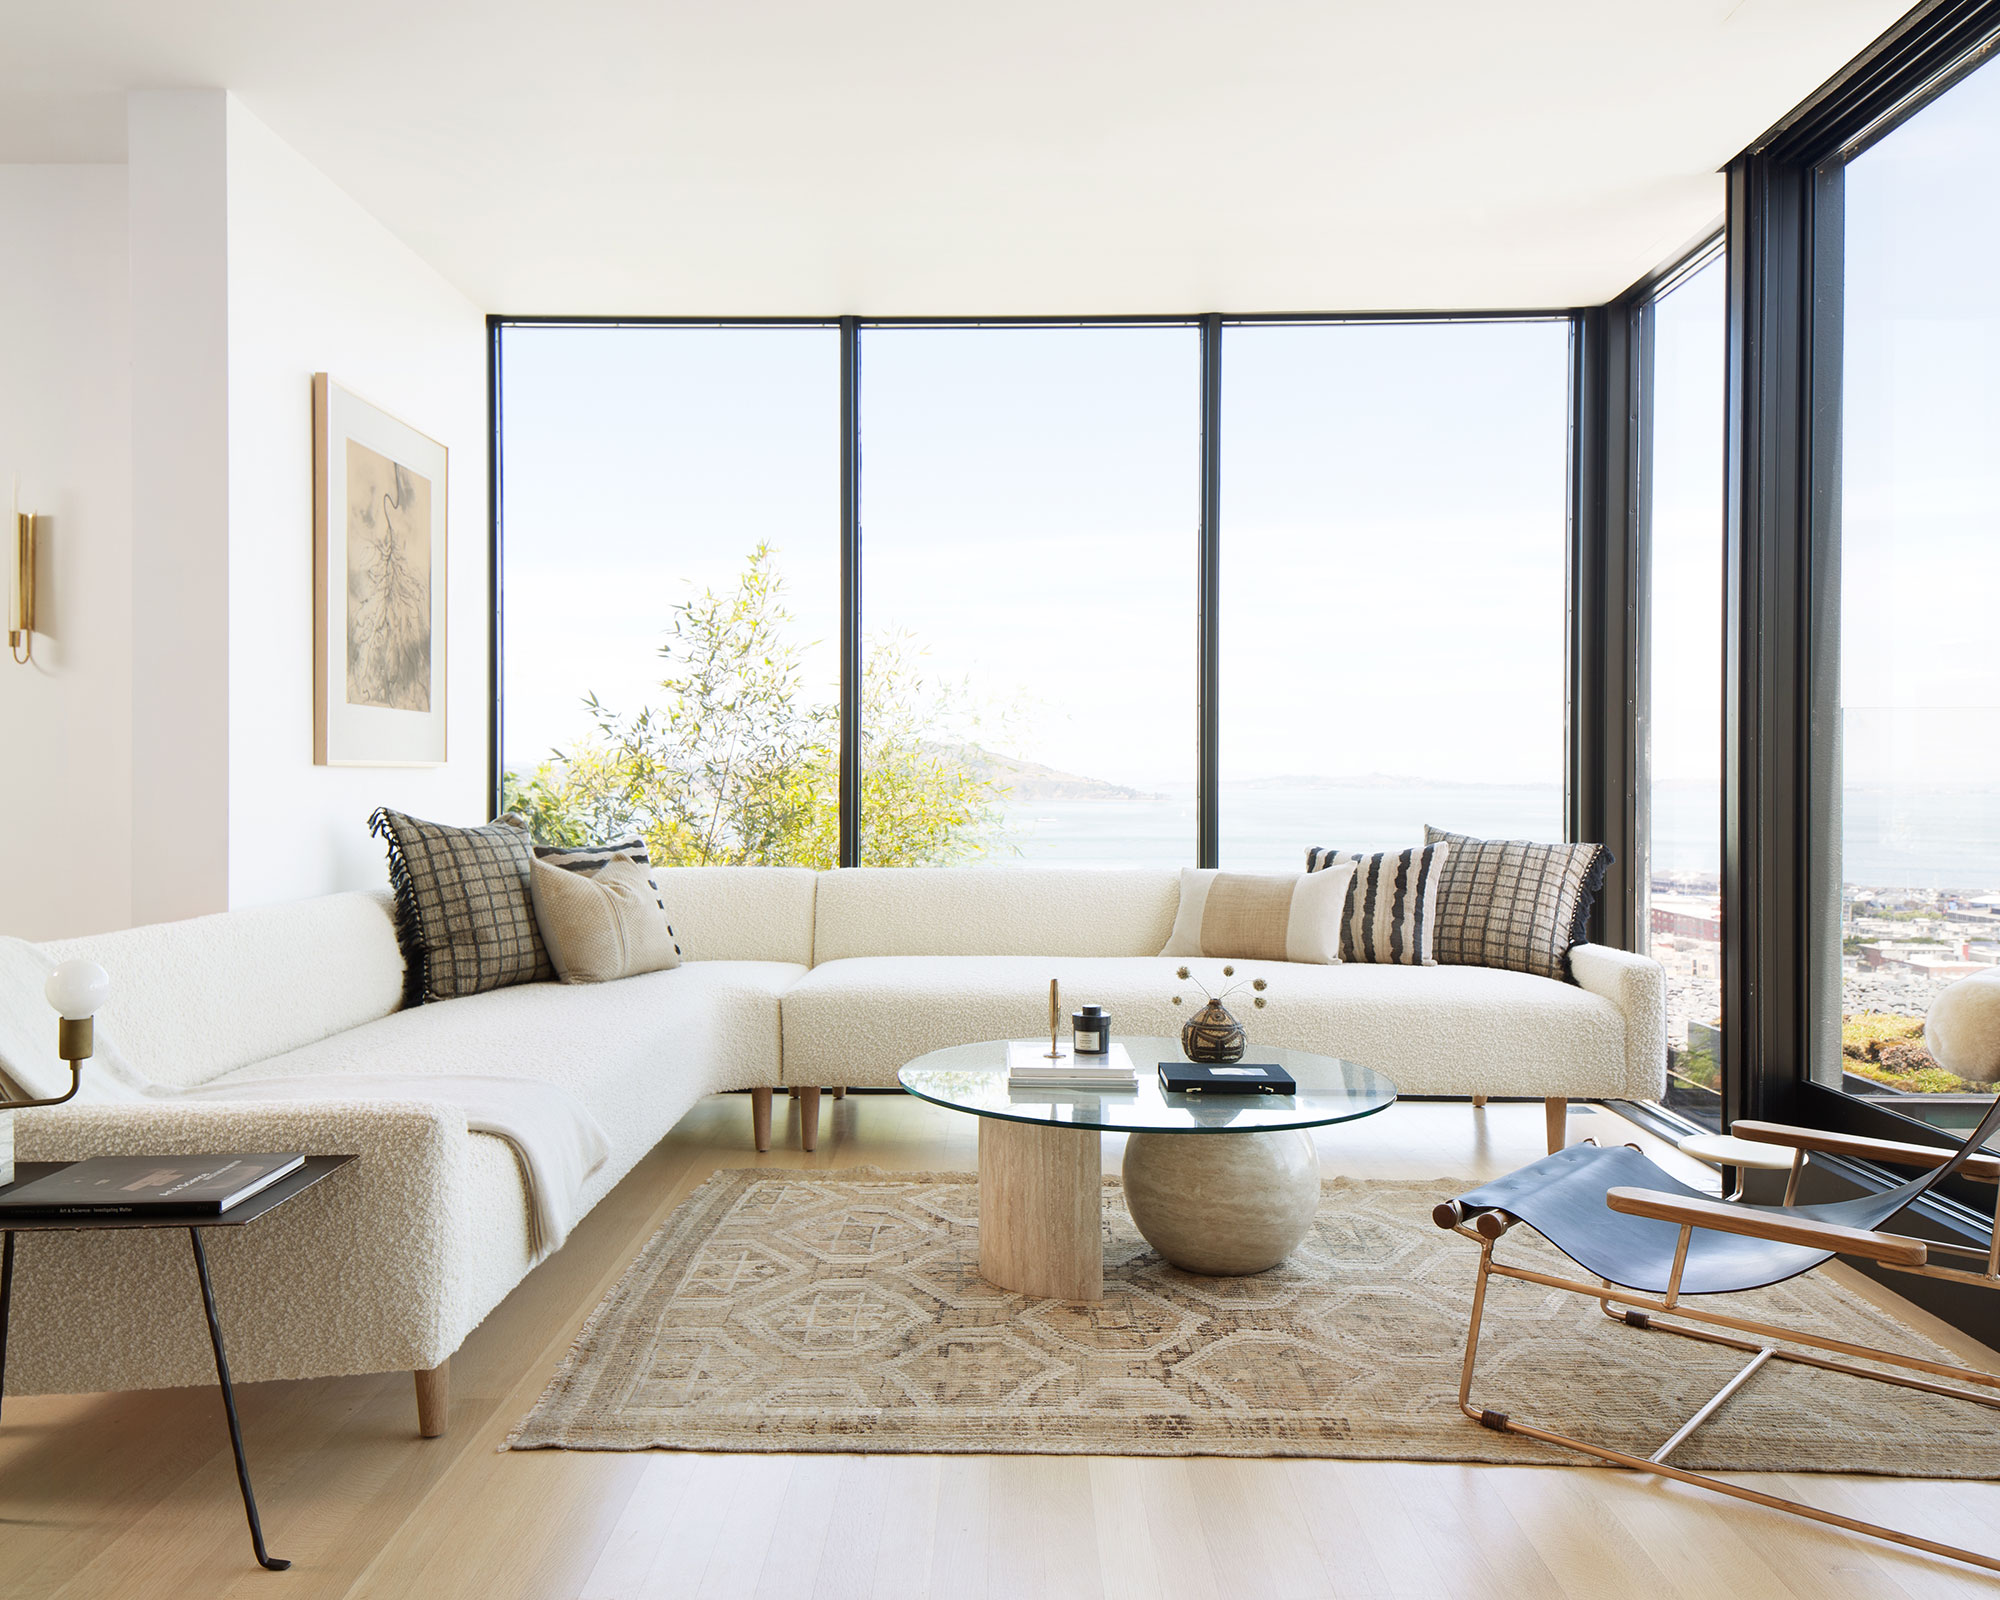 Minimalist living room ideas: 15 inspiring pared-back looks |